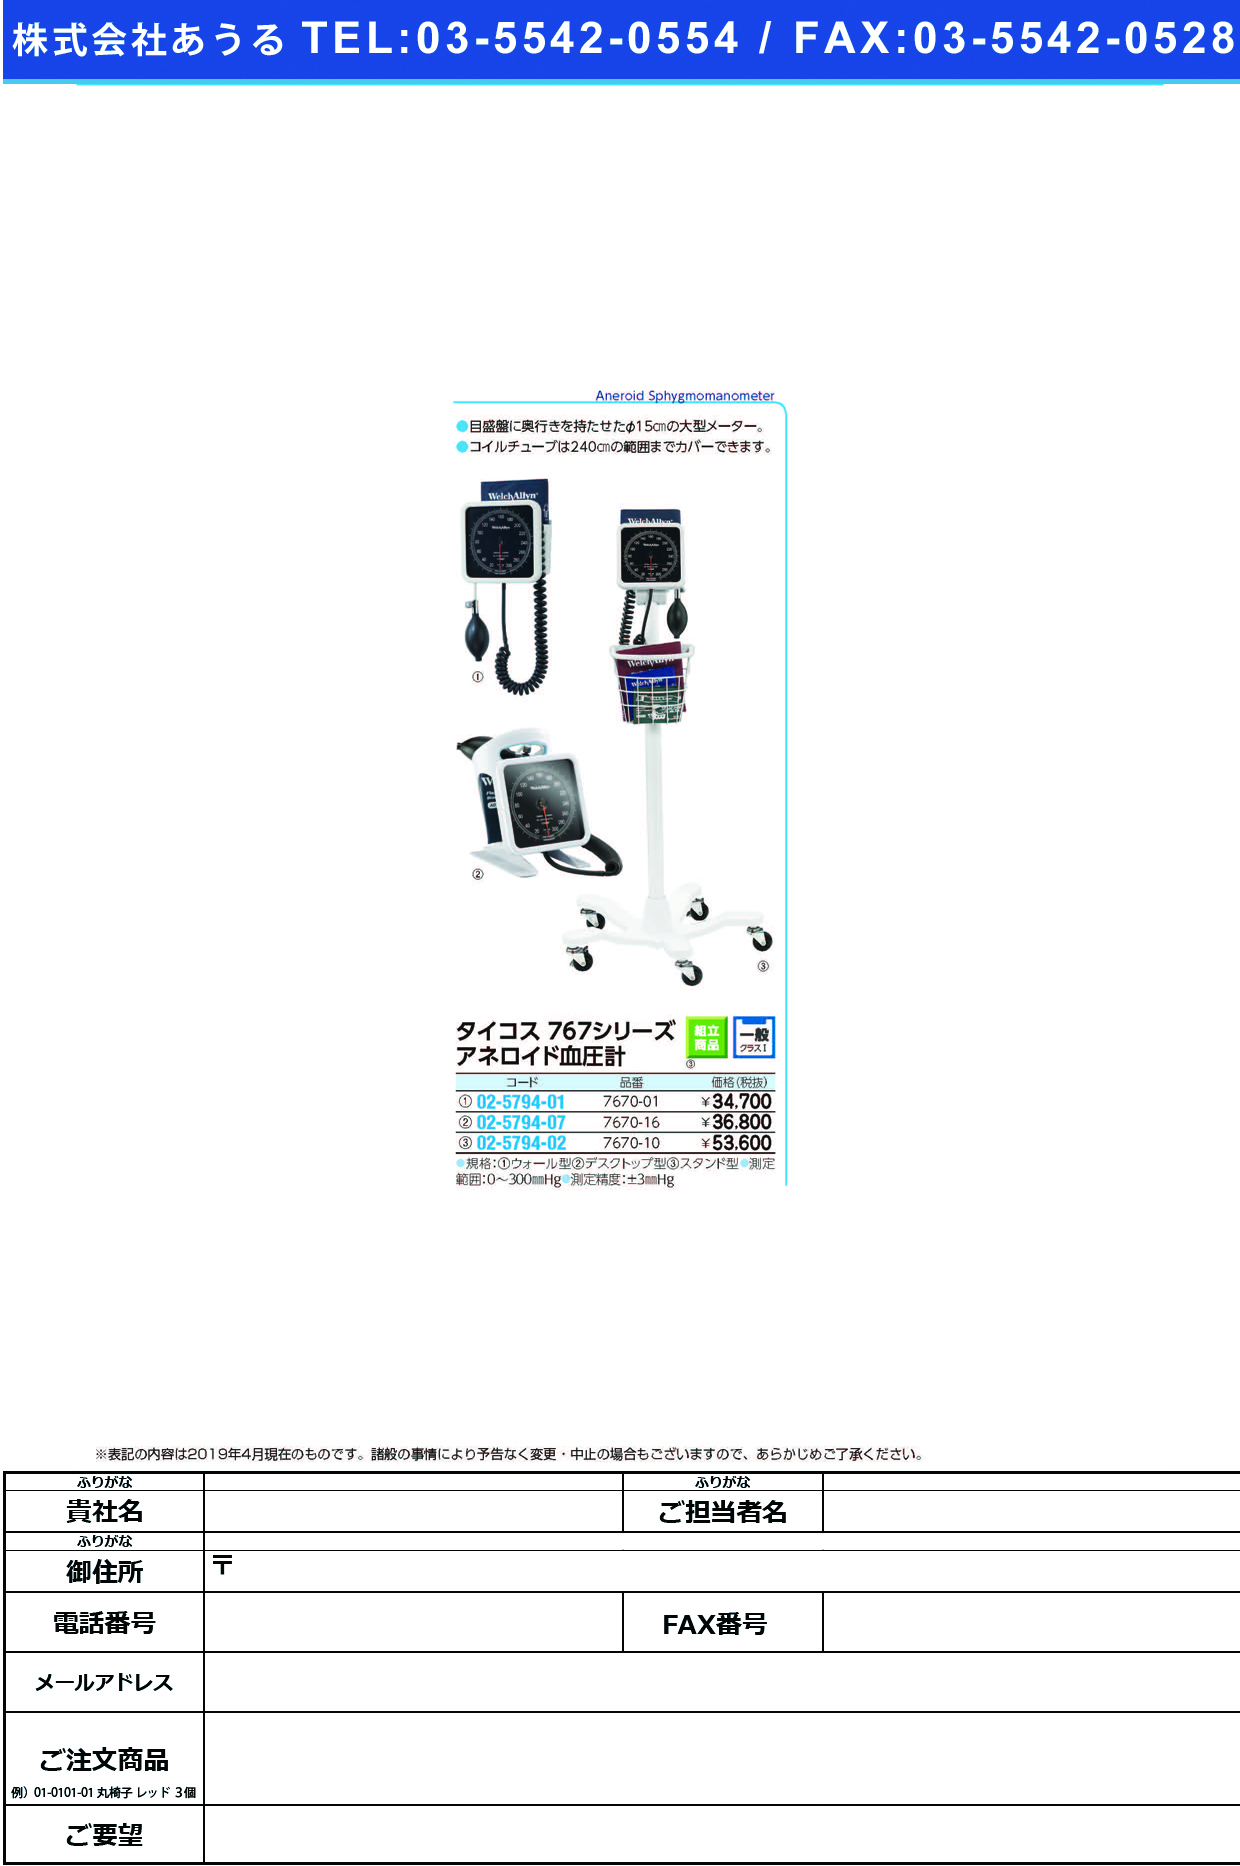 (02-5794-01)タイコス血圧計ウォール型 7670-01 ﾀｲｺｽｹﾂｱﾂｹｲｳｫｰﾙｶﾞﾀ【1台単位】【2019年カタログ商品】